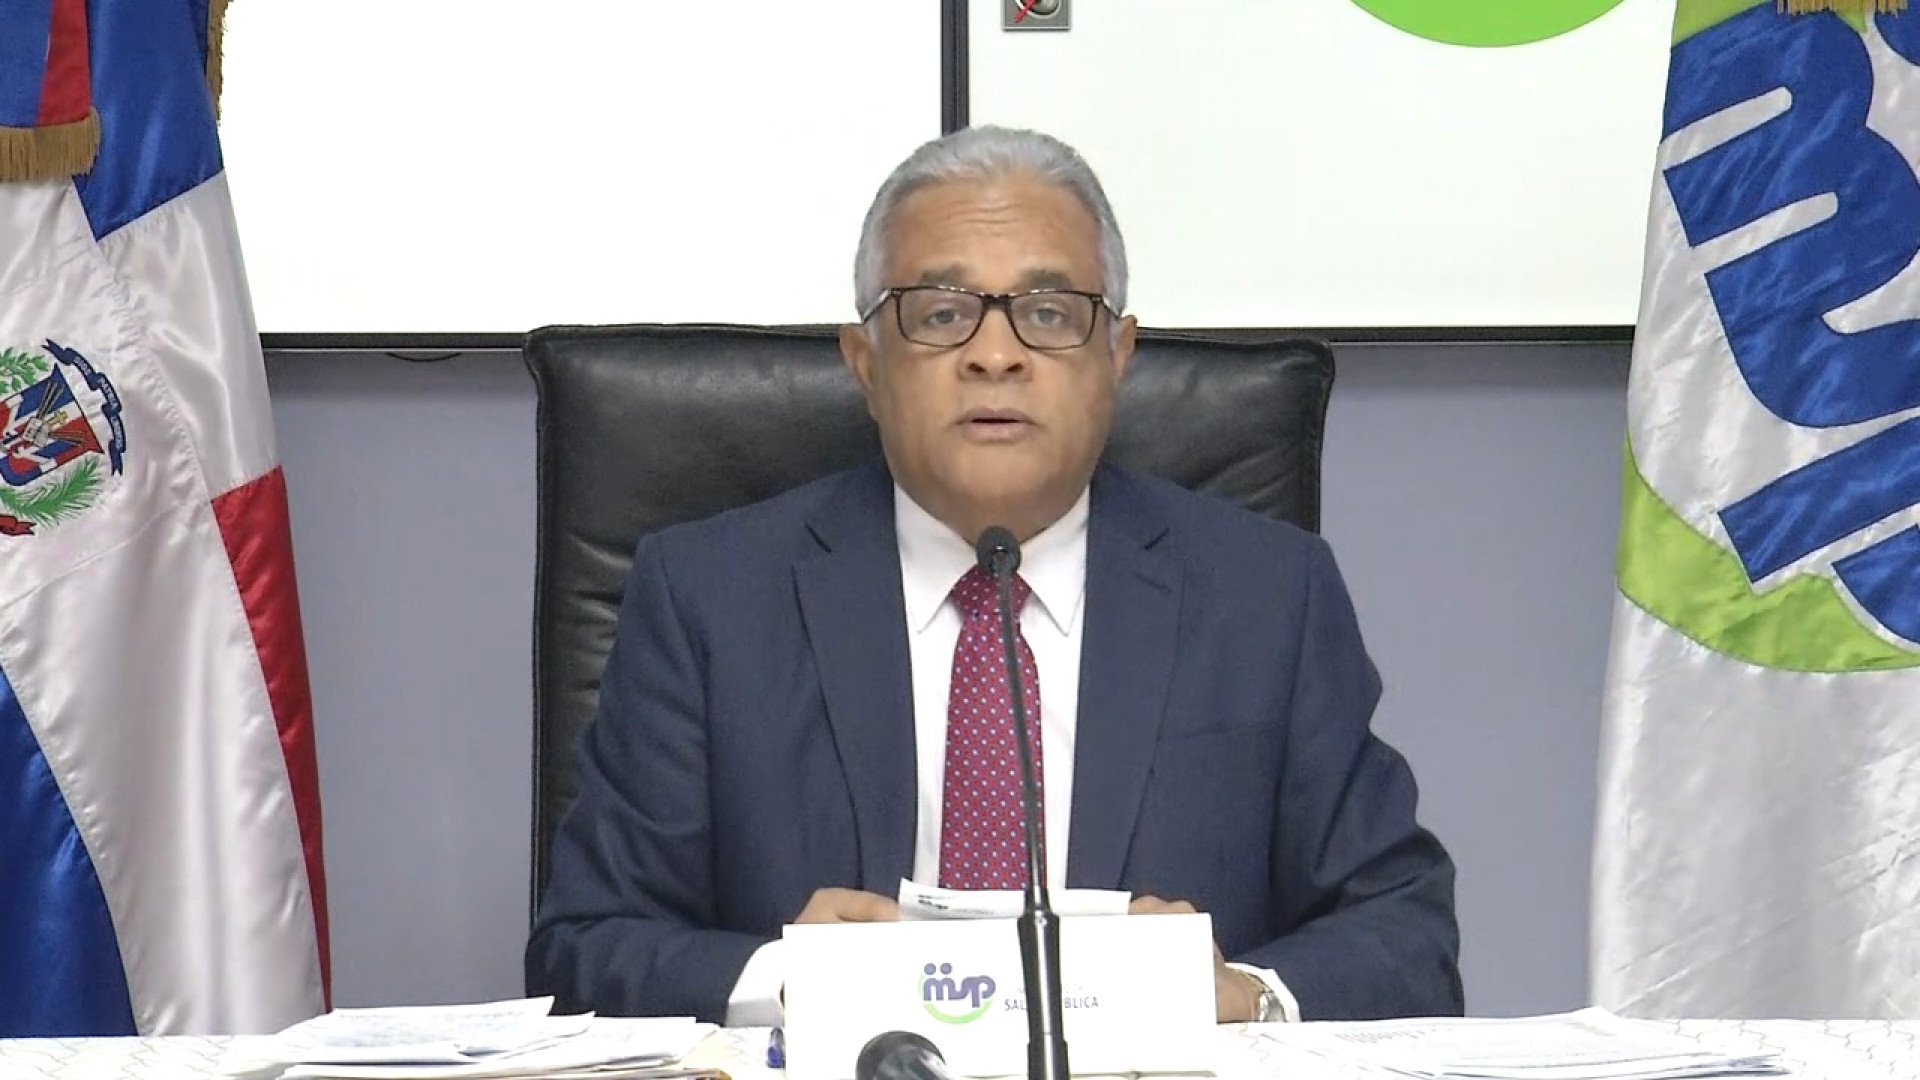 REPÚBLICA DOMINICANA: Ministro de Salud aclara medidas frente a COVID-19 están contenidas en Plan diseñado junto a OPS/OMS y no por sugerencias particulares